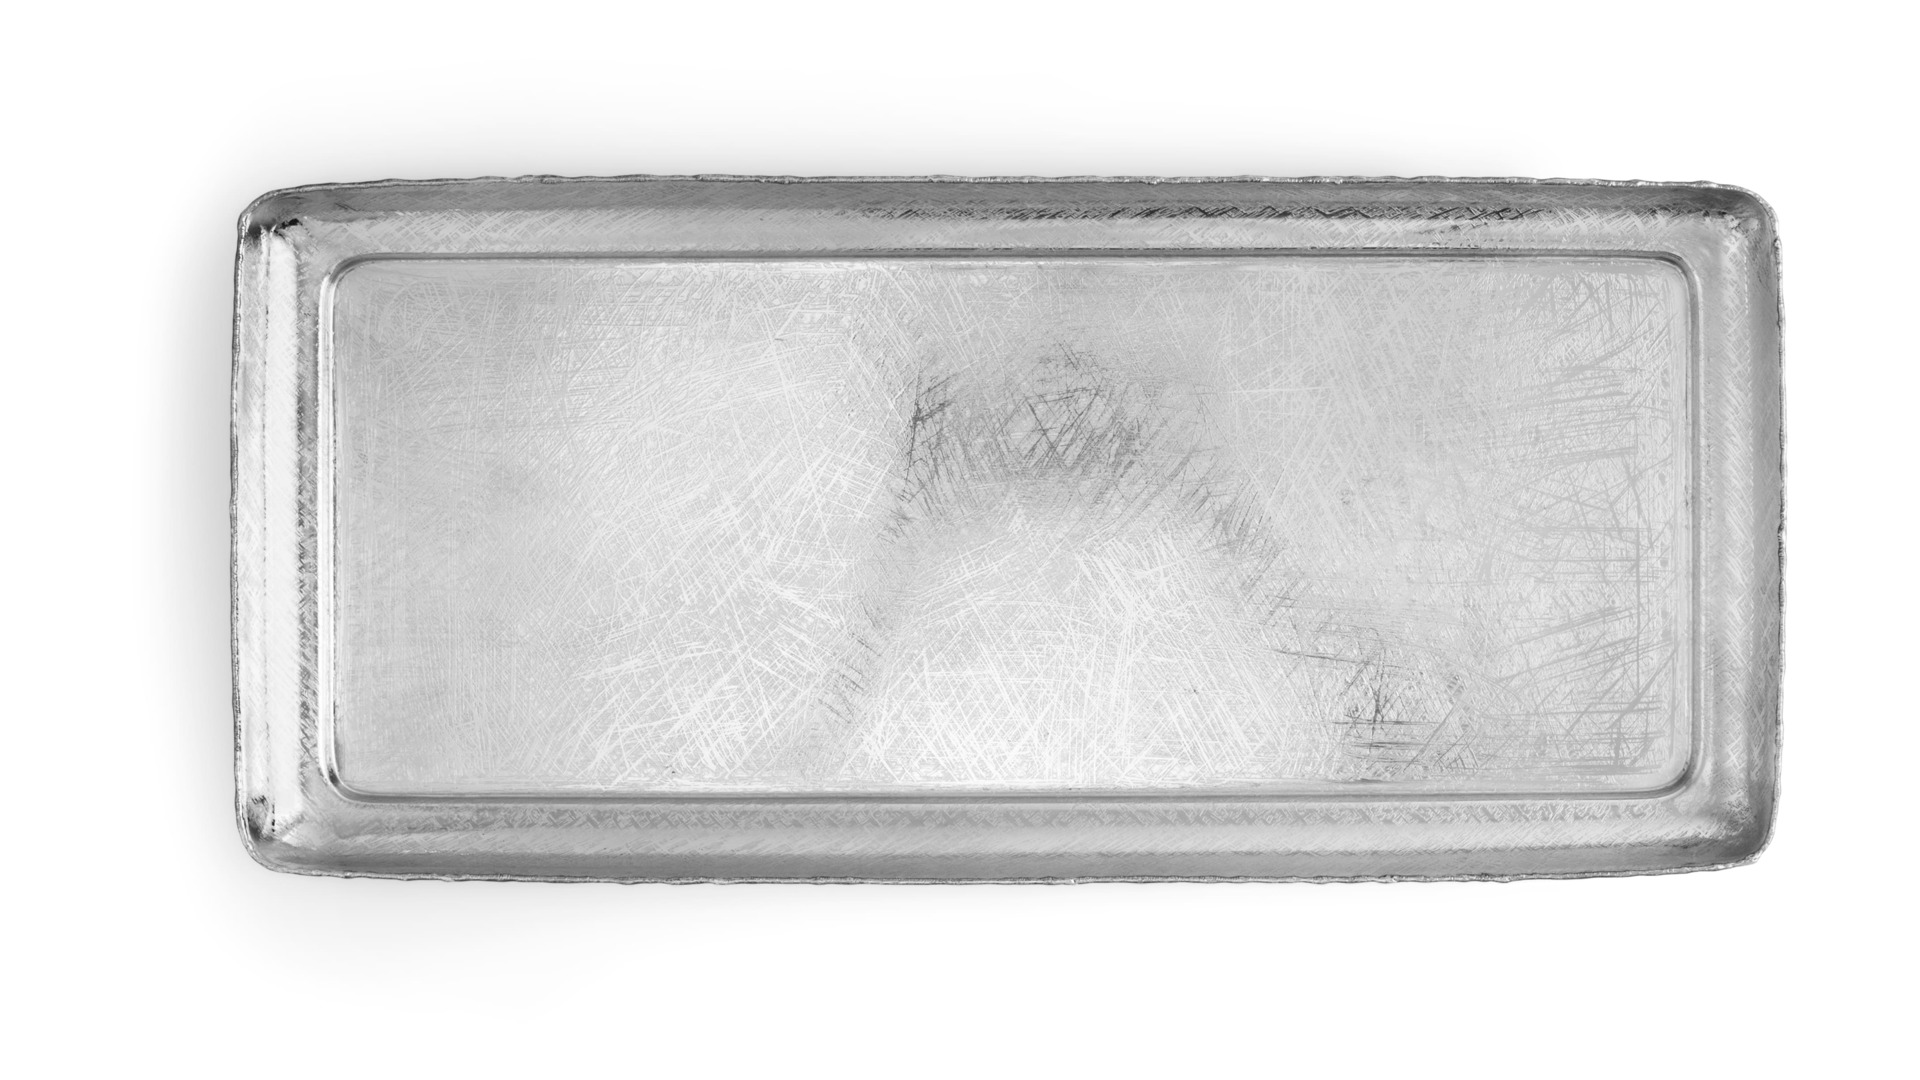 Поднос прямоугольный на подставке Michael Aram Бабочки гинкго 46 см, сталь нержавеющая, подставка 17